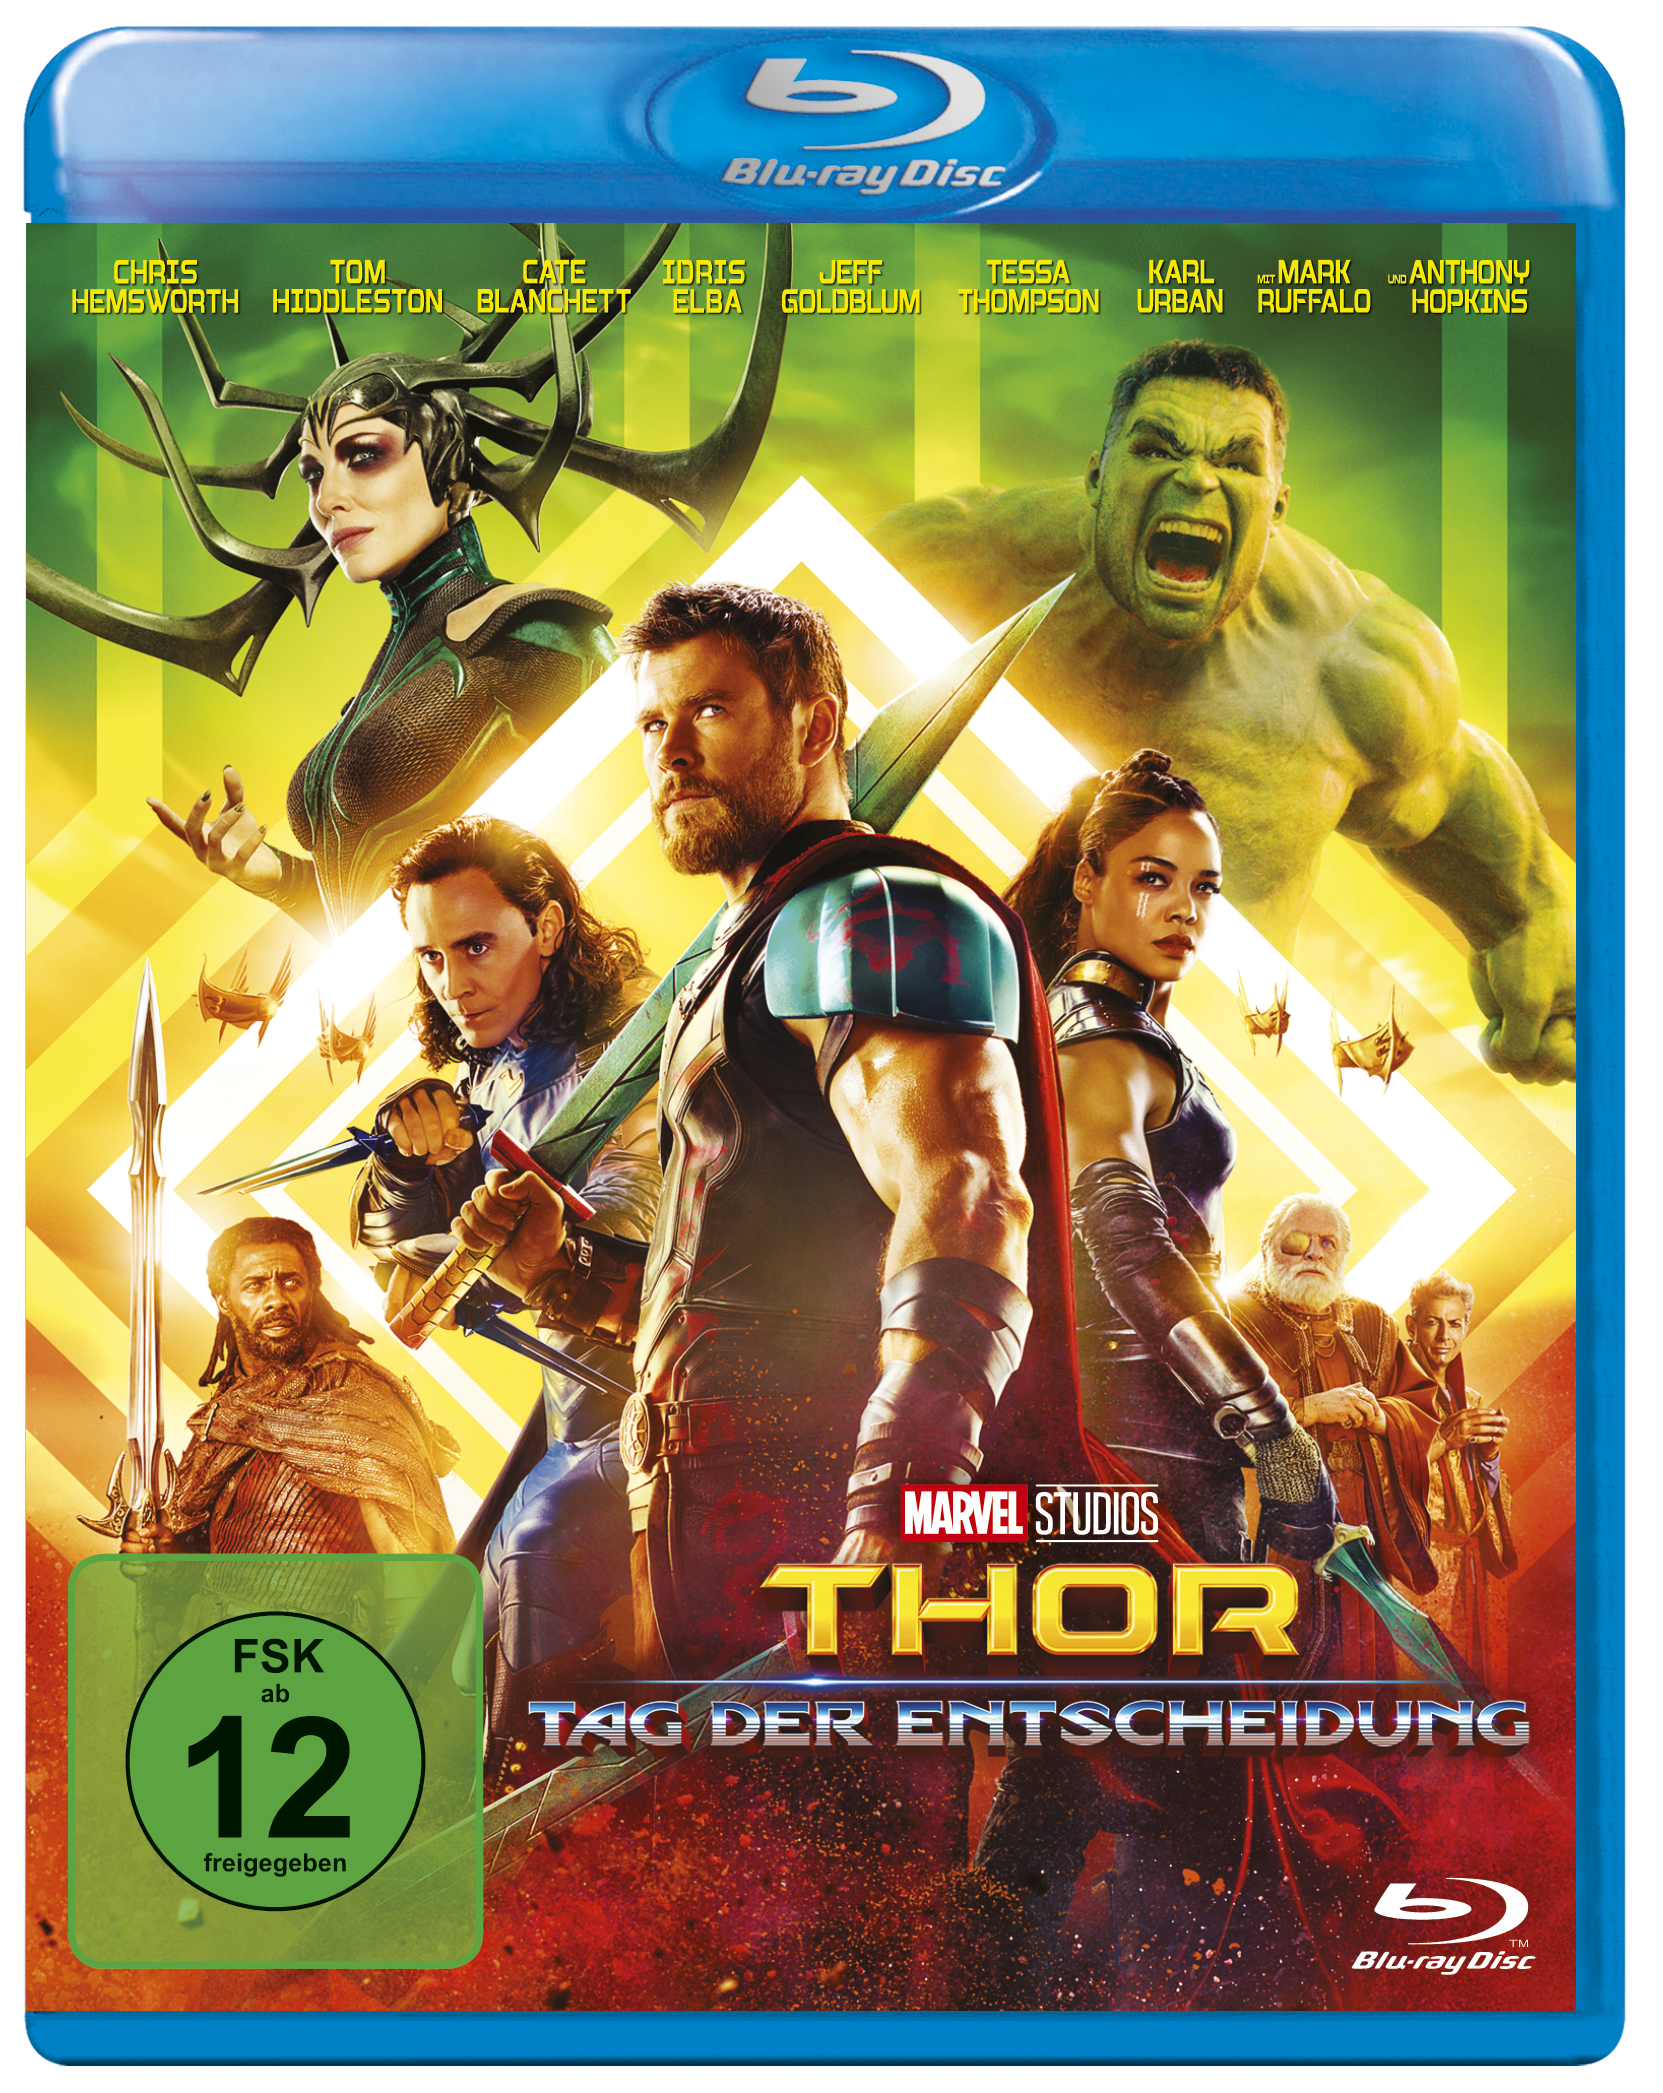 Thor: Tag der Entscheidung Blu-ray